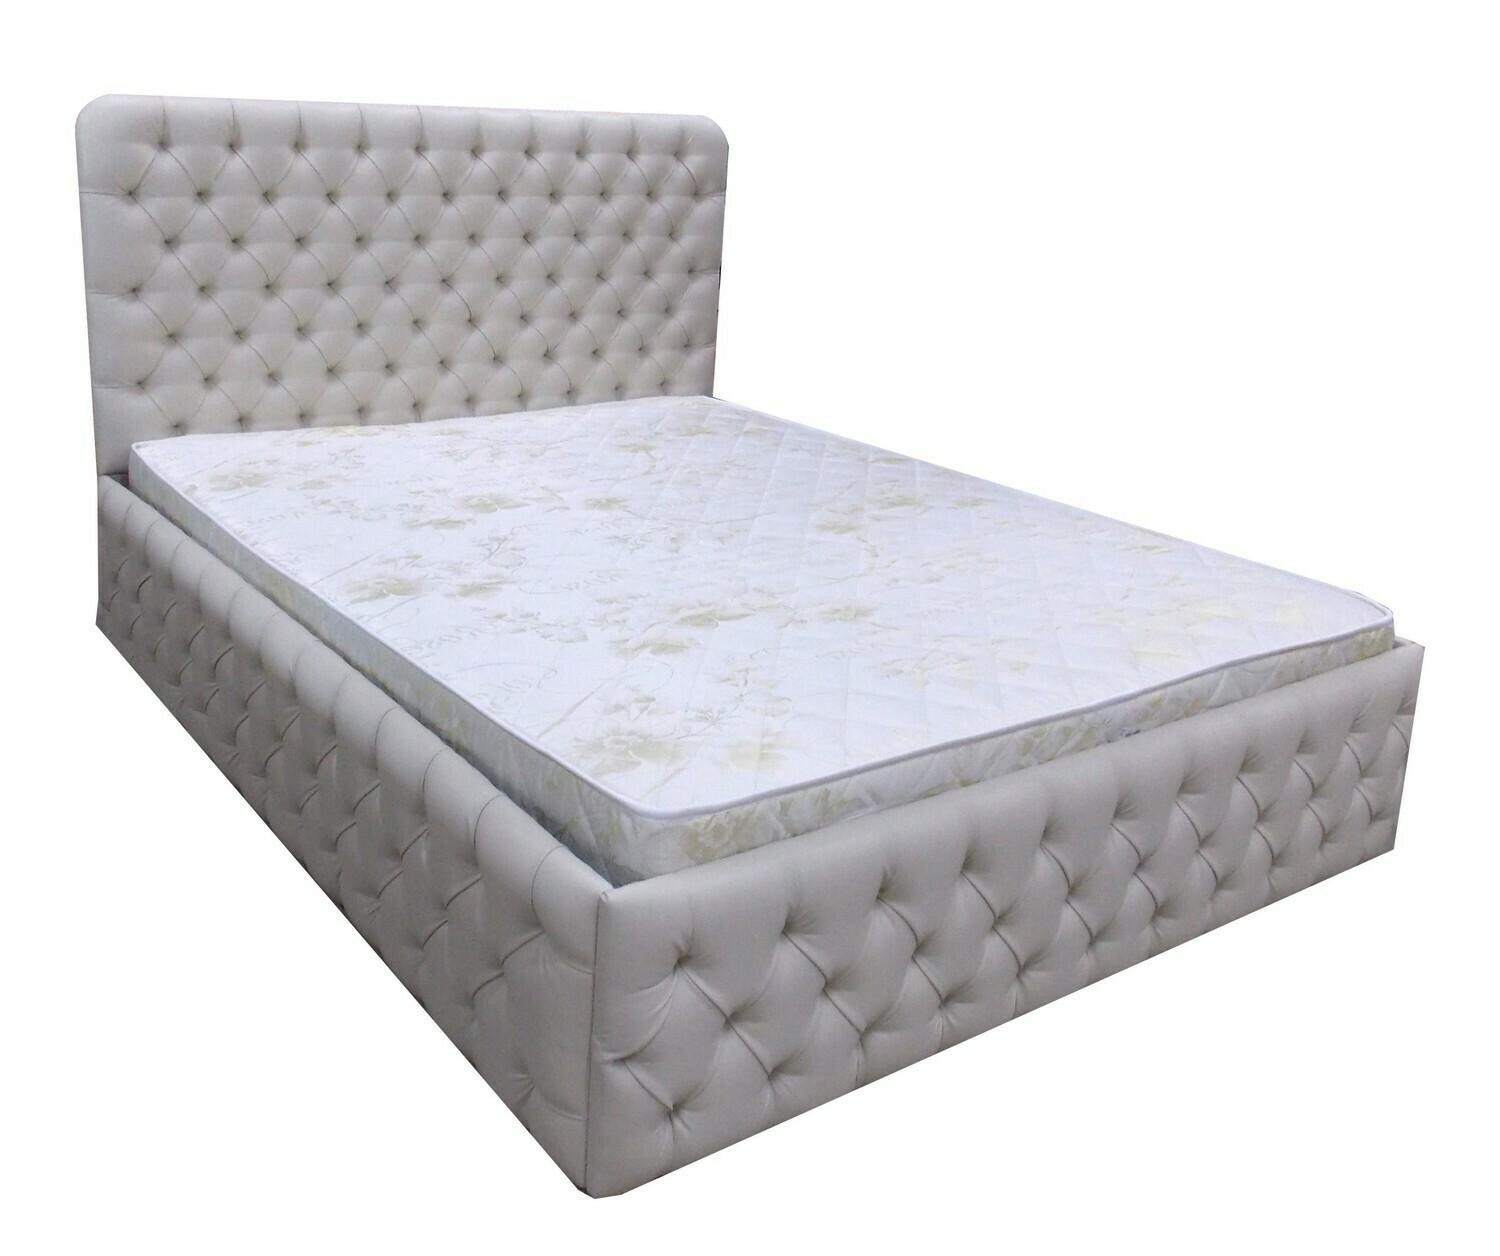 Двуспальная кровать "Мираж" с отделкой пуговкой (каретная стяжка) купить в Барнауле недорого